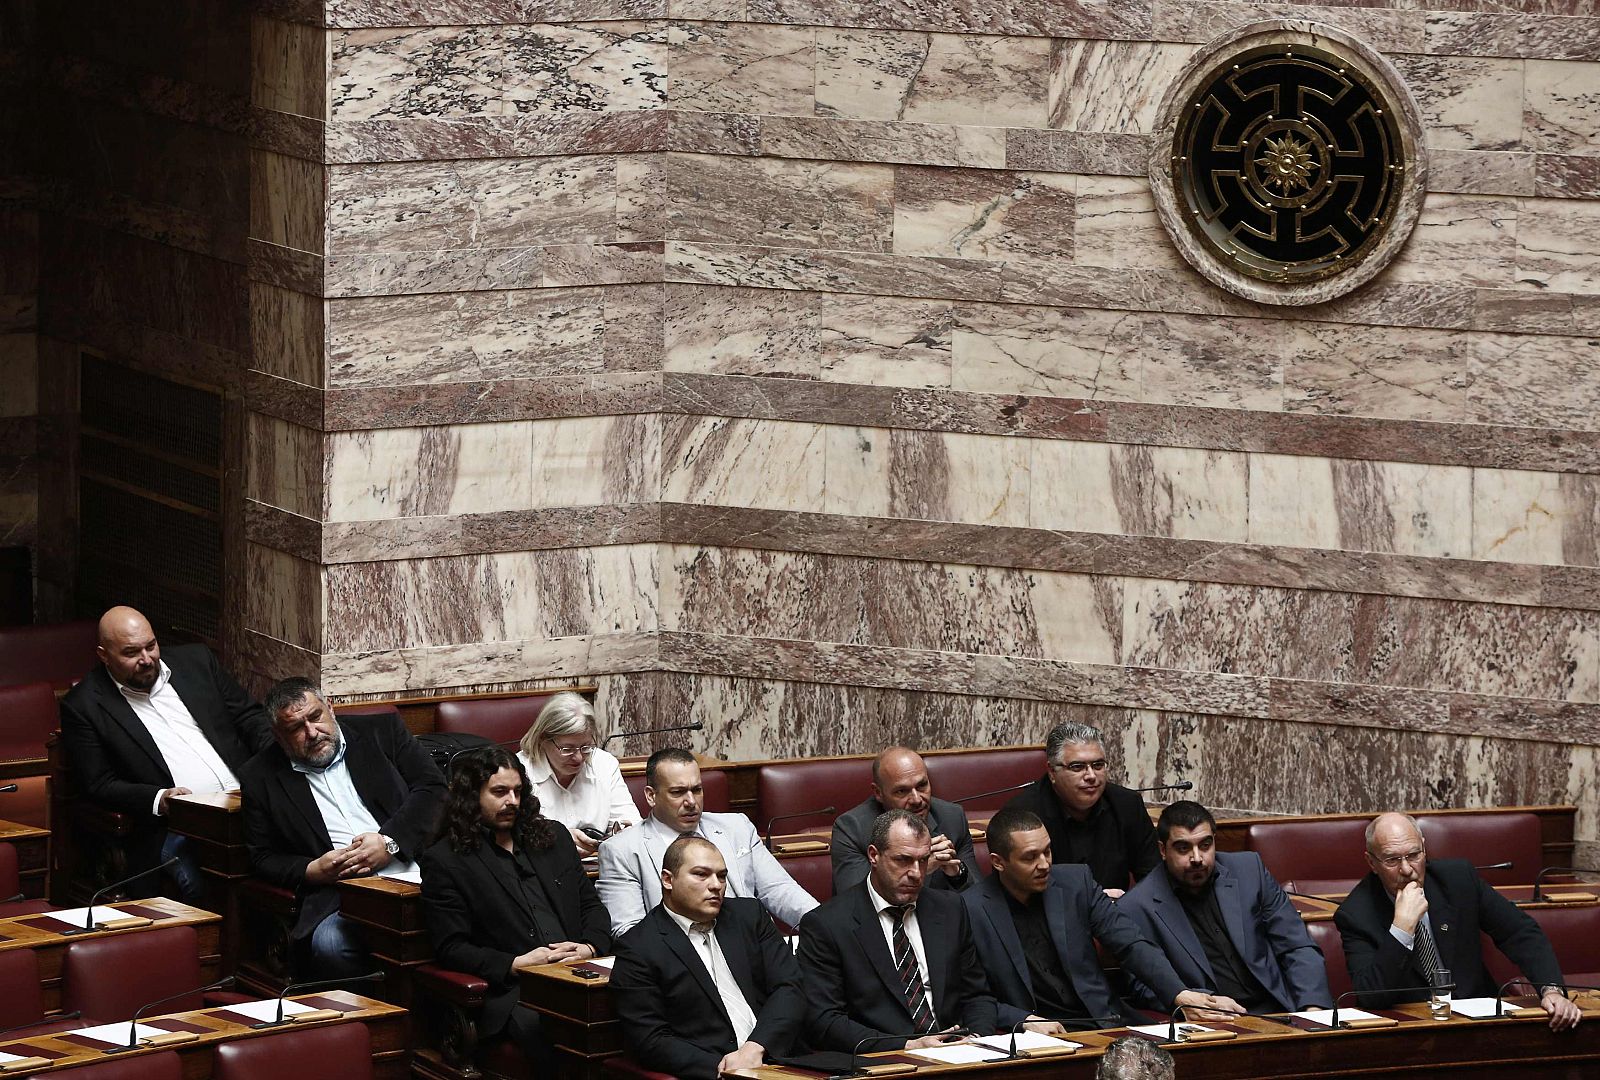 Diputados de Amanecer Dorado en una sesión parlamentaria en Atenas.